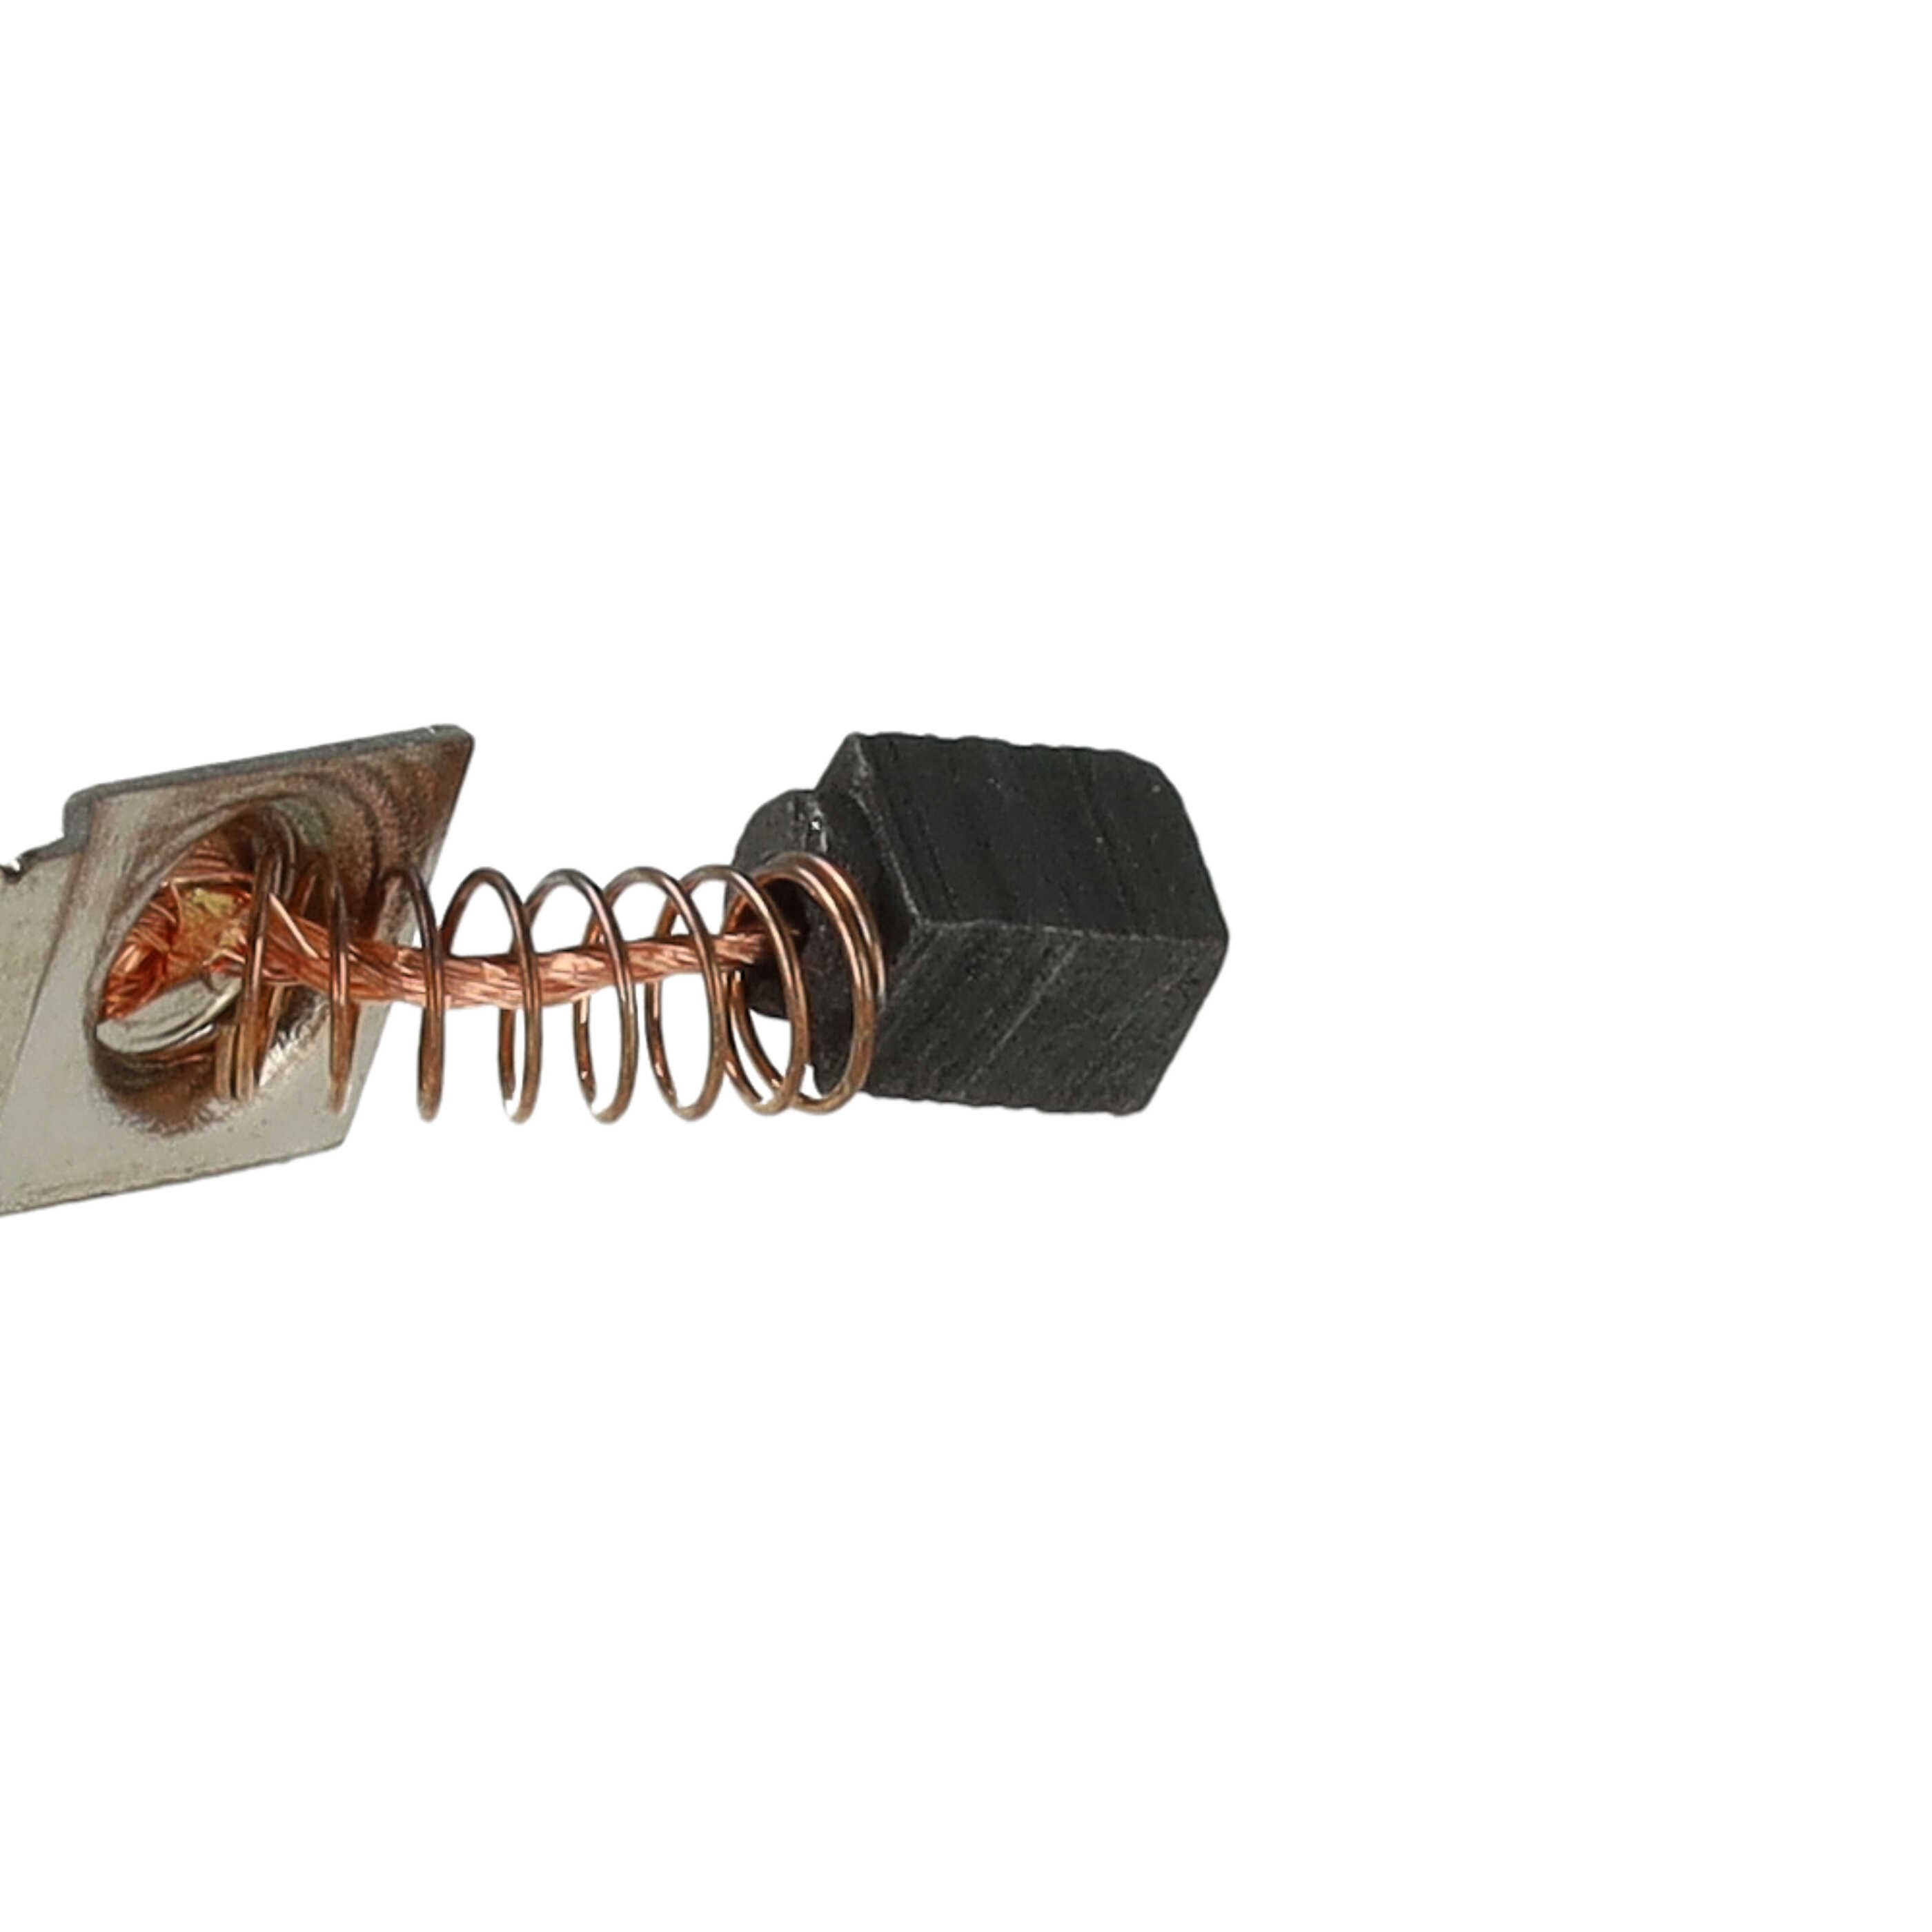 2x Kohlebürsten passend für SaeshinStrong Elektrogerät + Feder, 5,5 x 3 x 3 mm